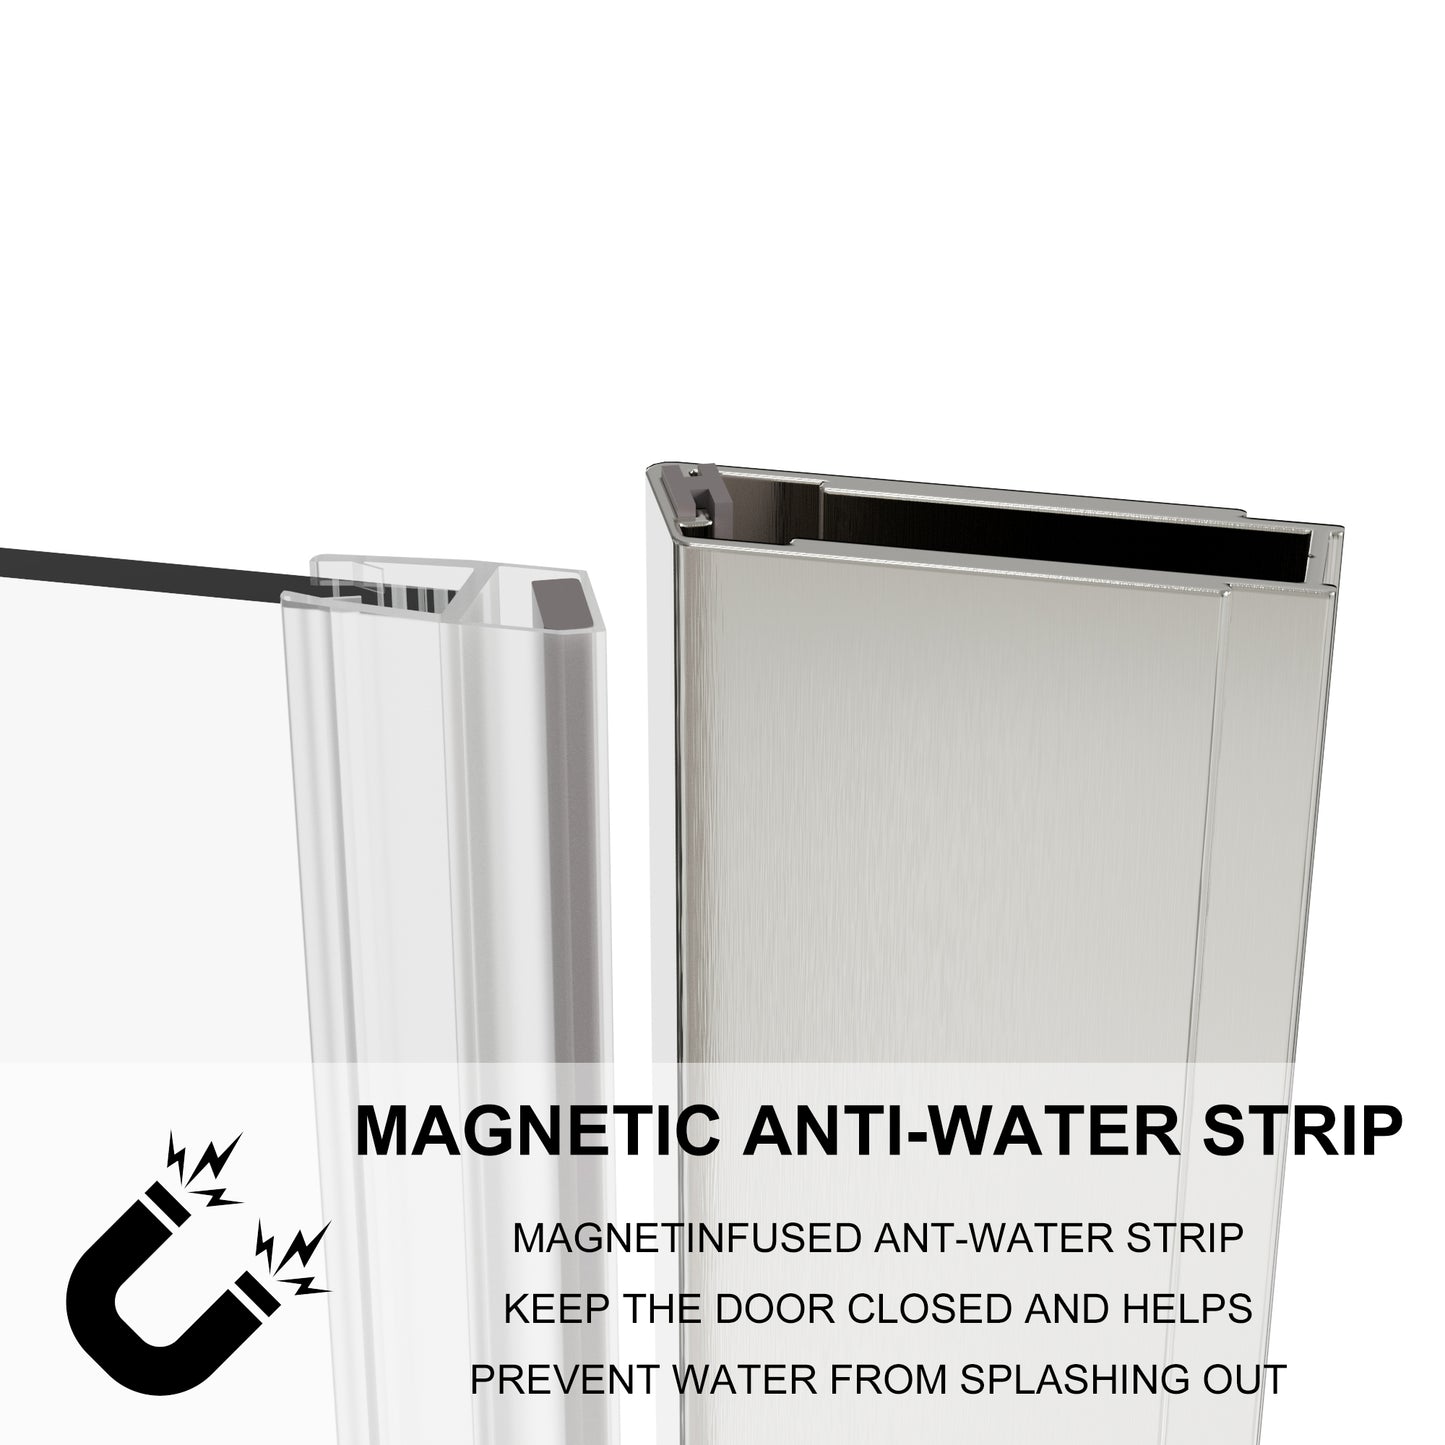 Waterpar® Bi-Fold Minimalist Frameless Shower Door Brushed Nickel Clear Glass